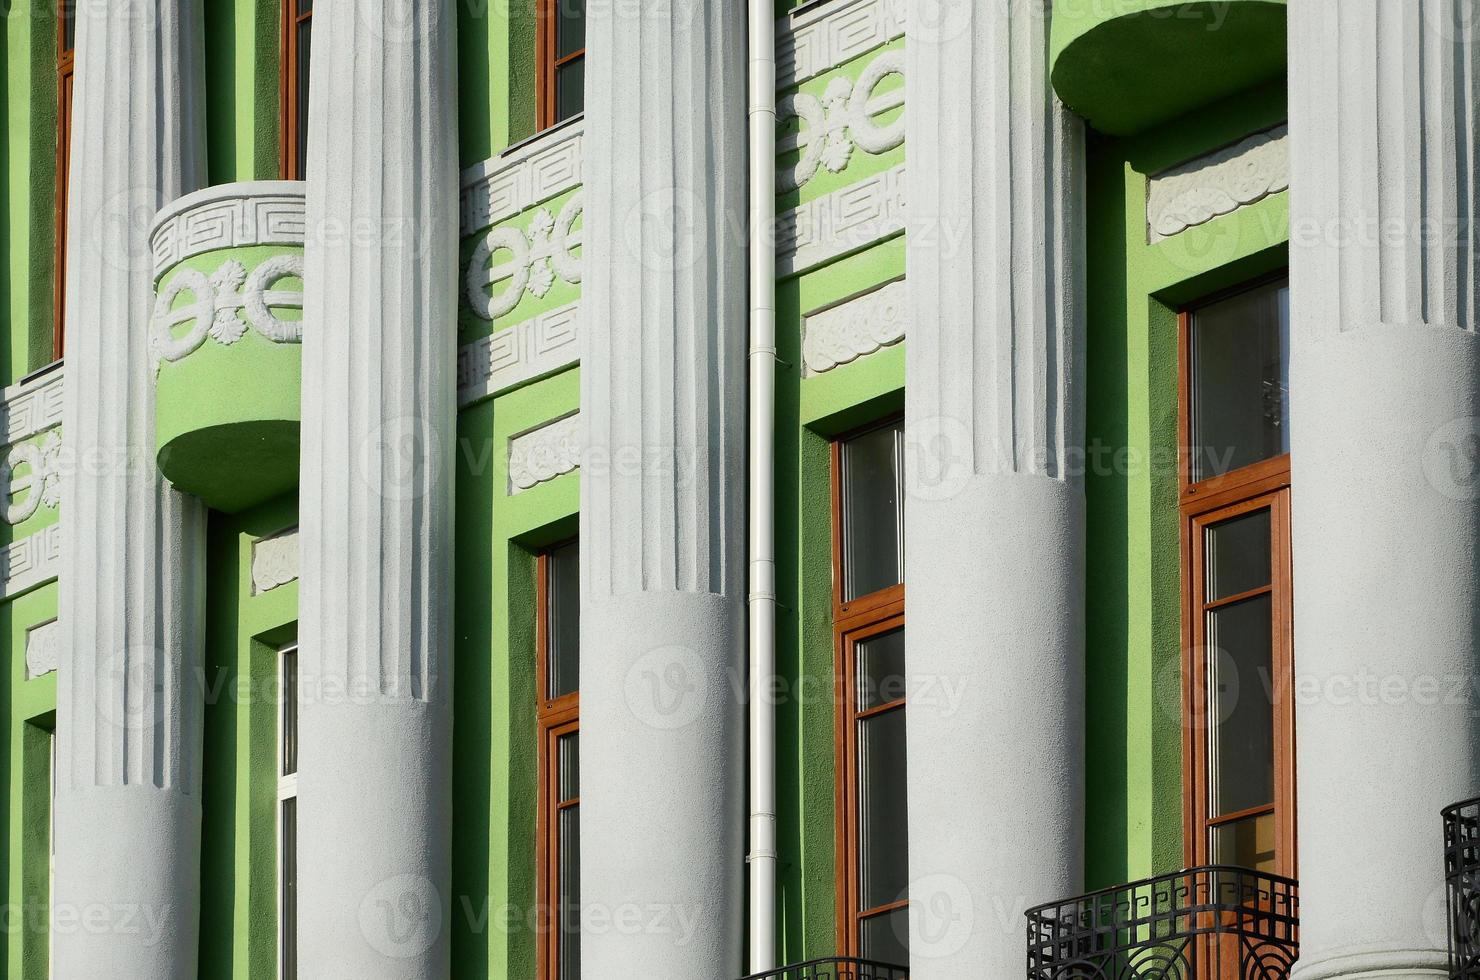 antiguo edificio restaurado de varias plantas con columnas antiguas, pintado de verde foto